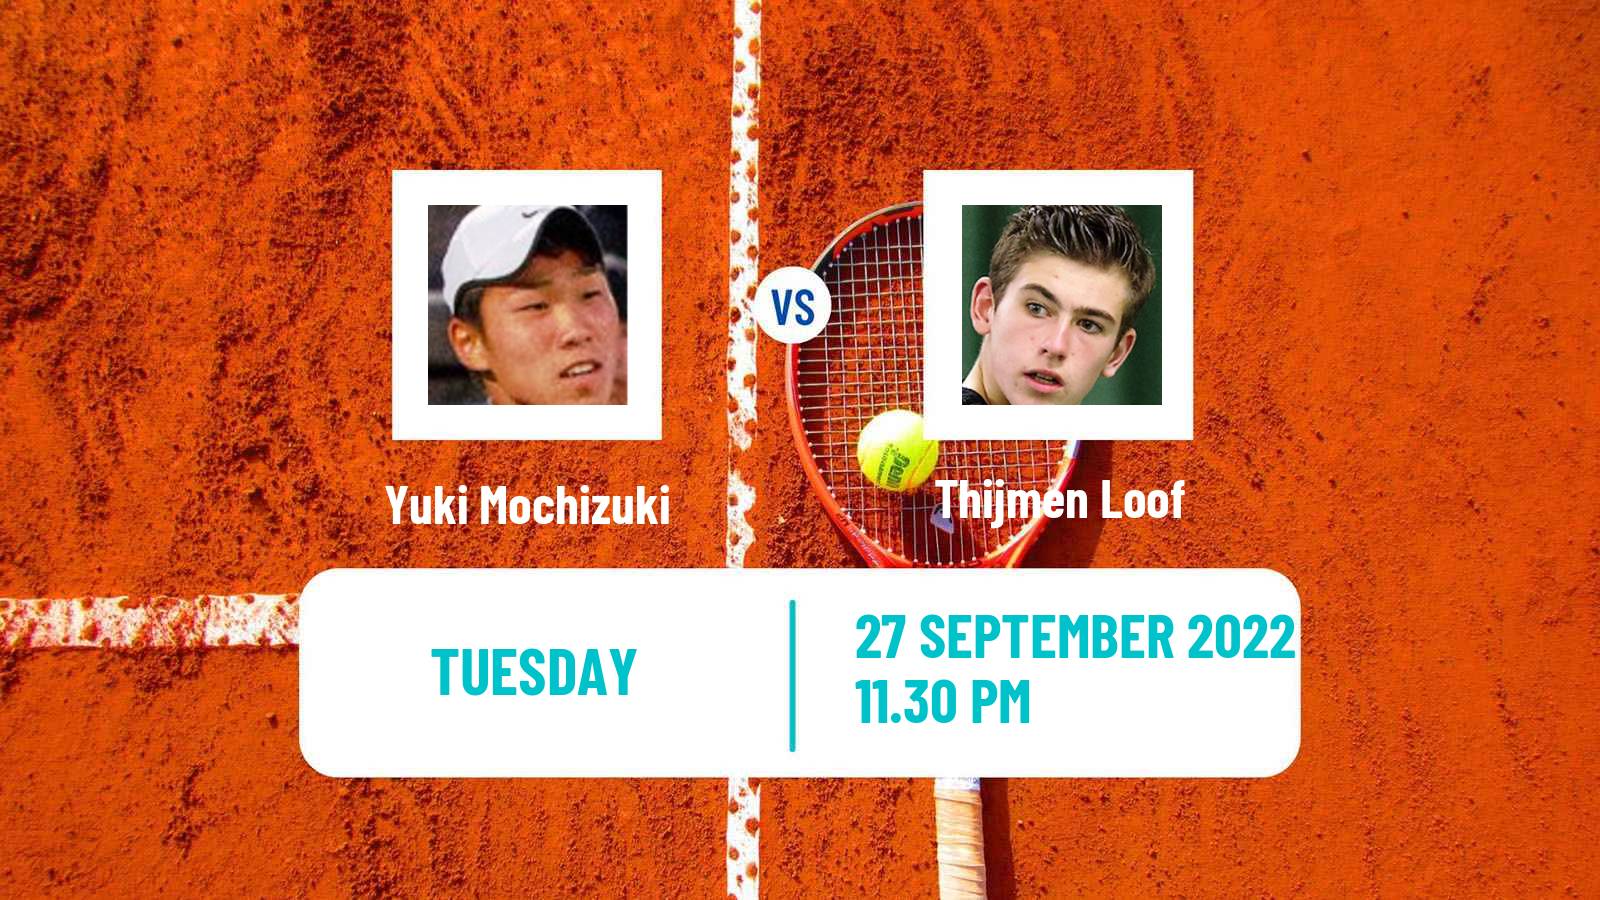 Tennis ITF Tournaments Yuki Mochizuki - Thijmen Loof